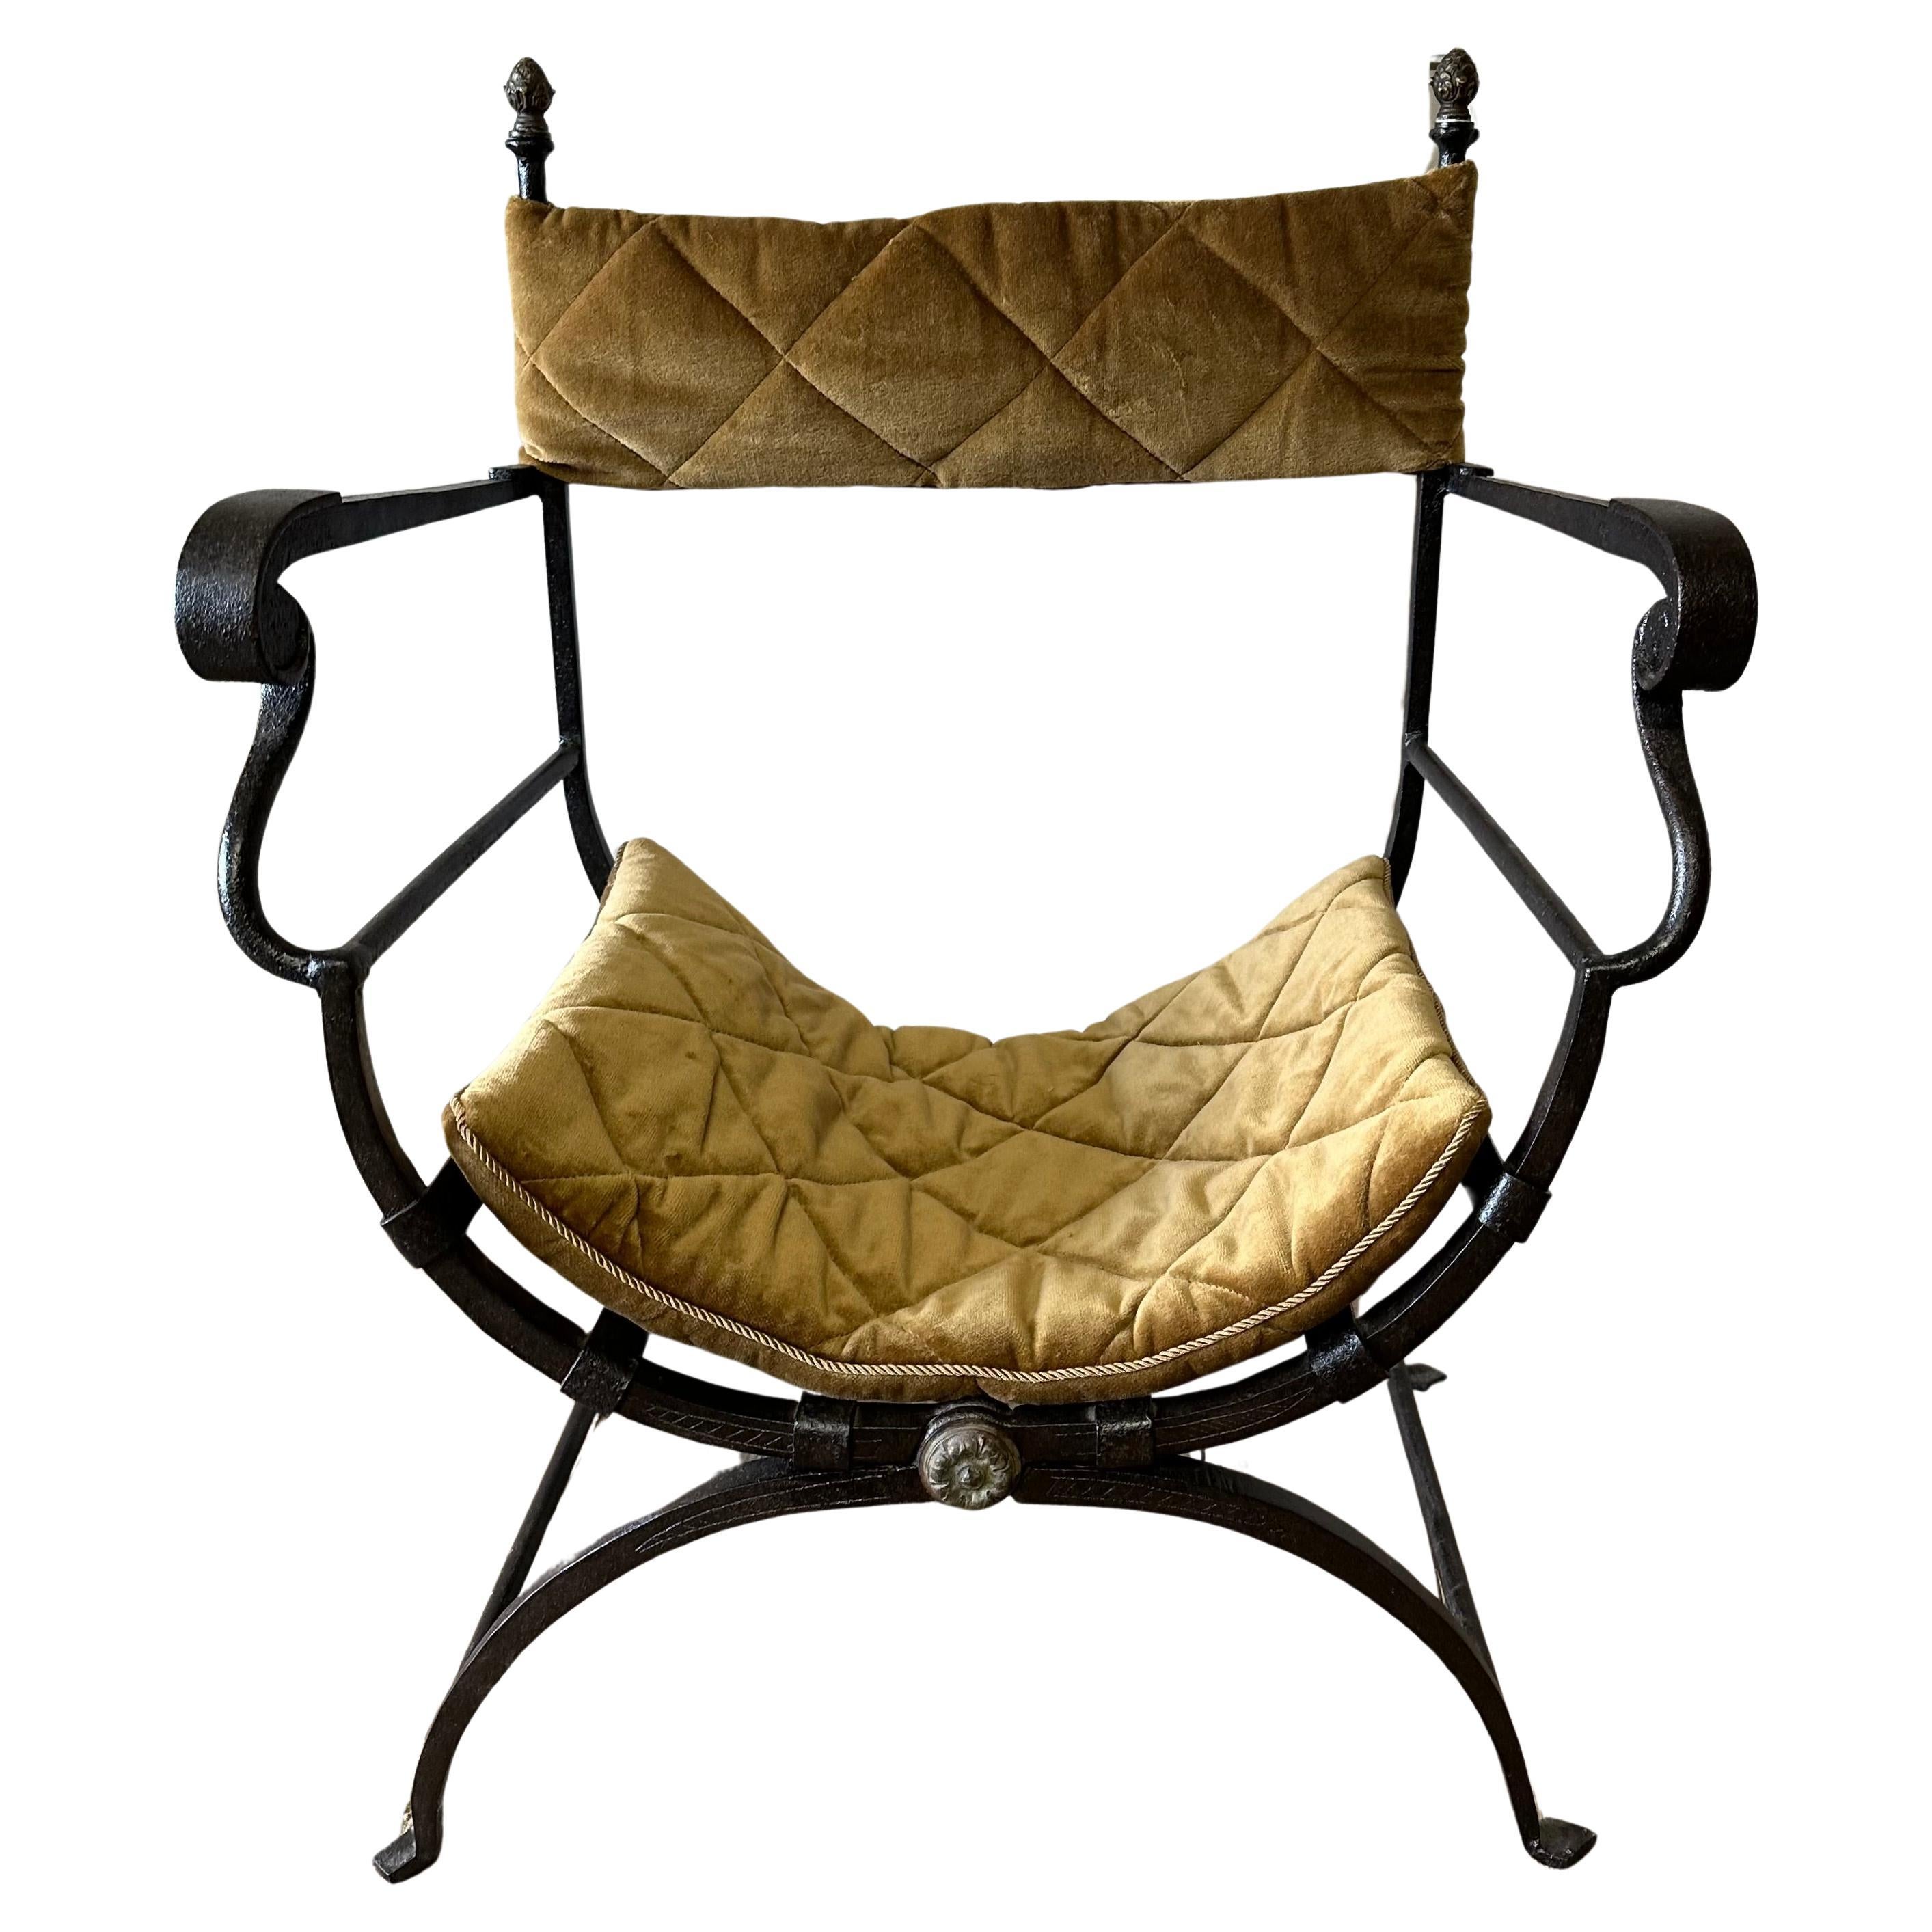 Superbe chaise italienne en fer Savonarola Dante également connue sous le nom de chaises x ou chaises Curule. Elle est composée d'un cadre en fer qui se replie en style Campagne avec des épis de faîtage montés en bronze. Le dossier en bandoulière et